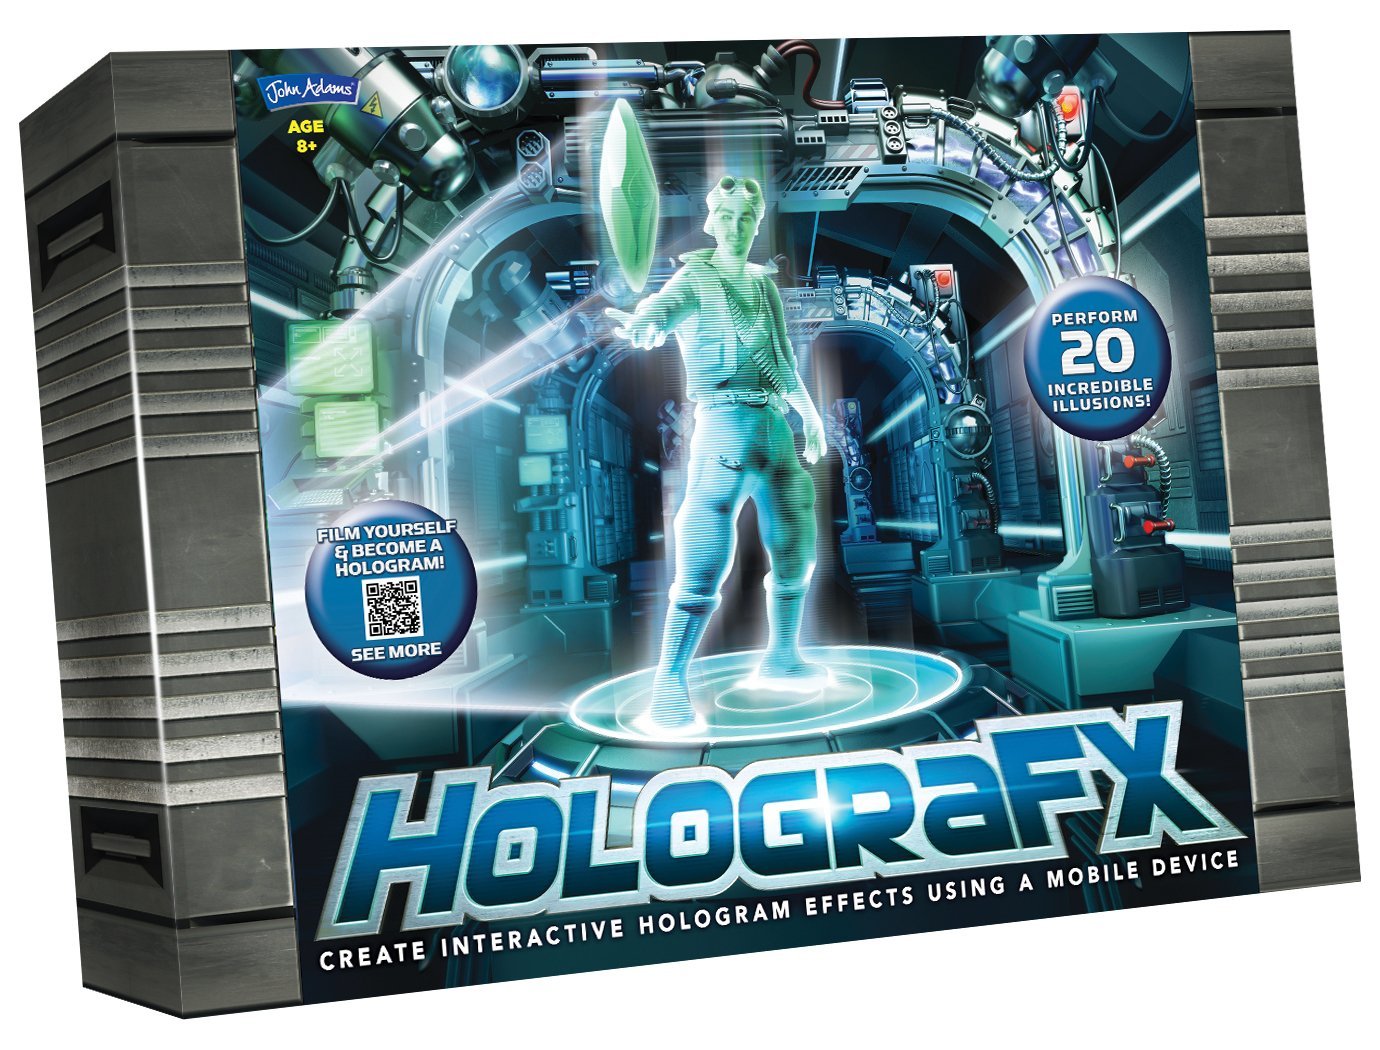 Comprar HolograFX